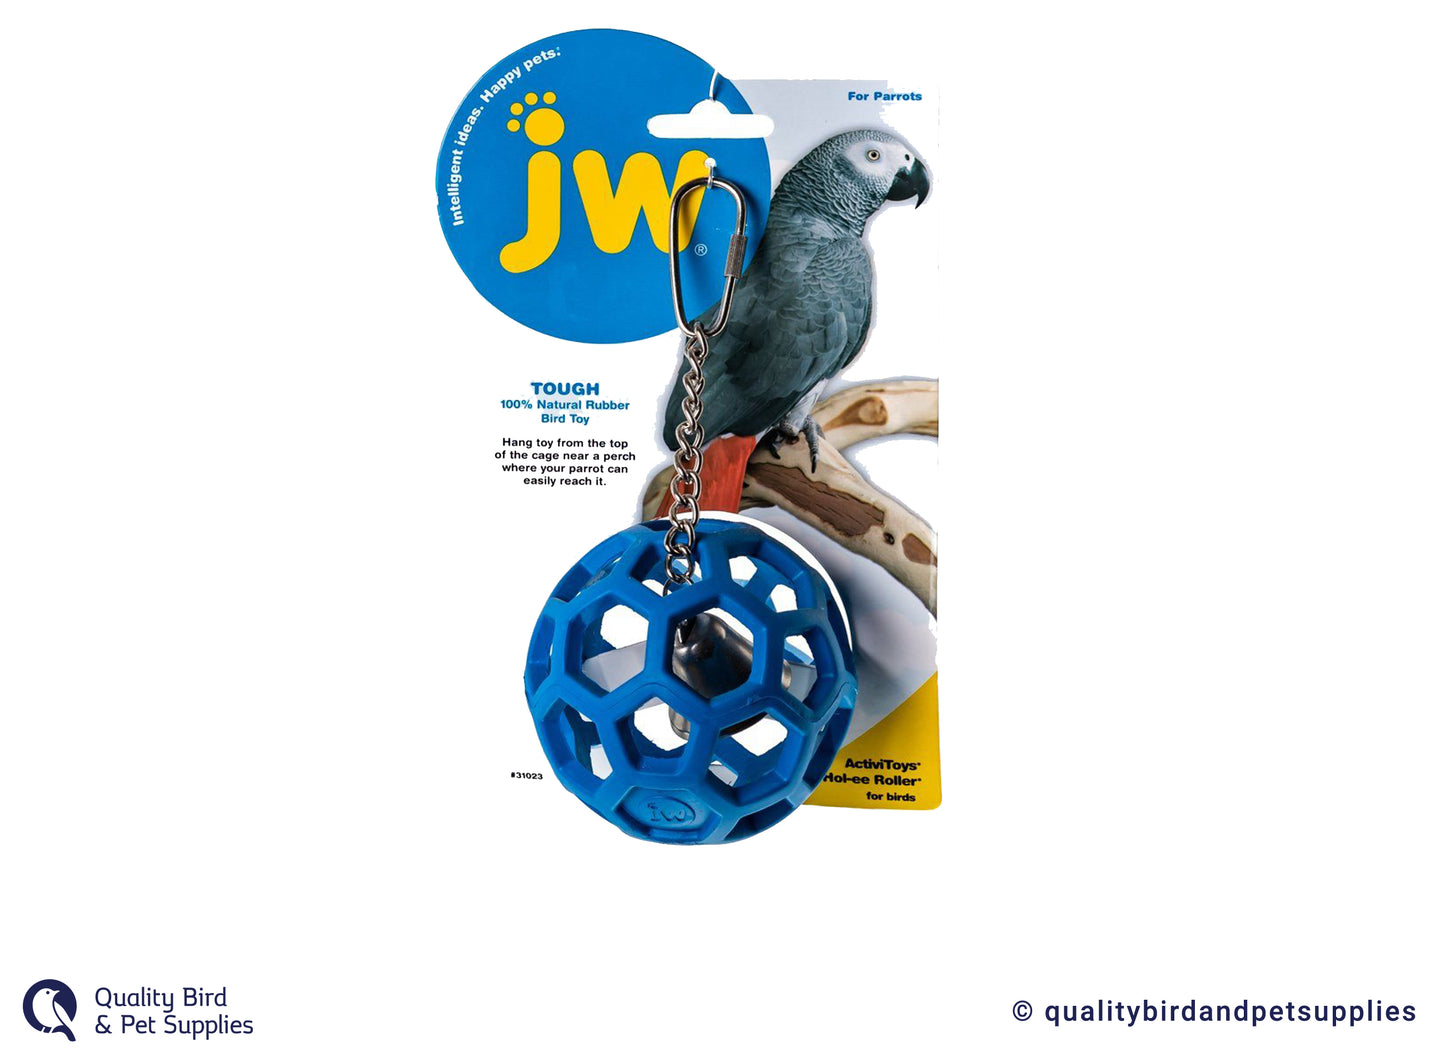 JW Hol-ee Roller For Parrots